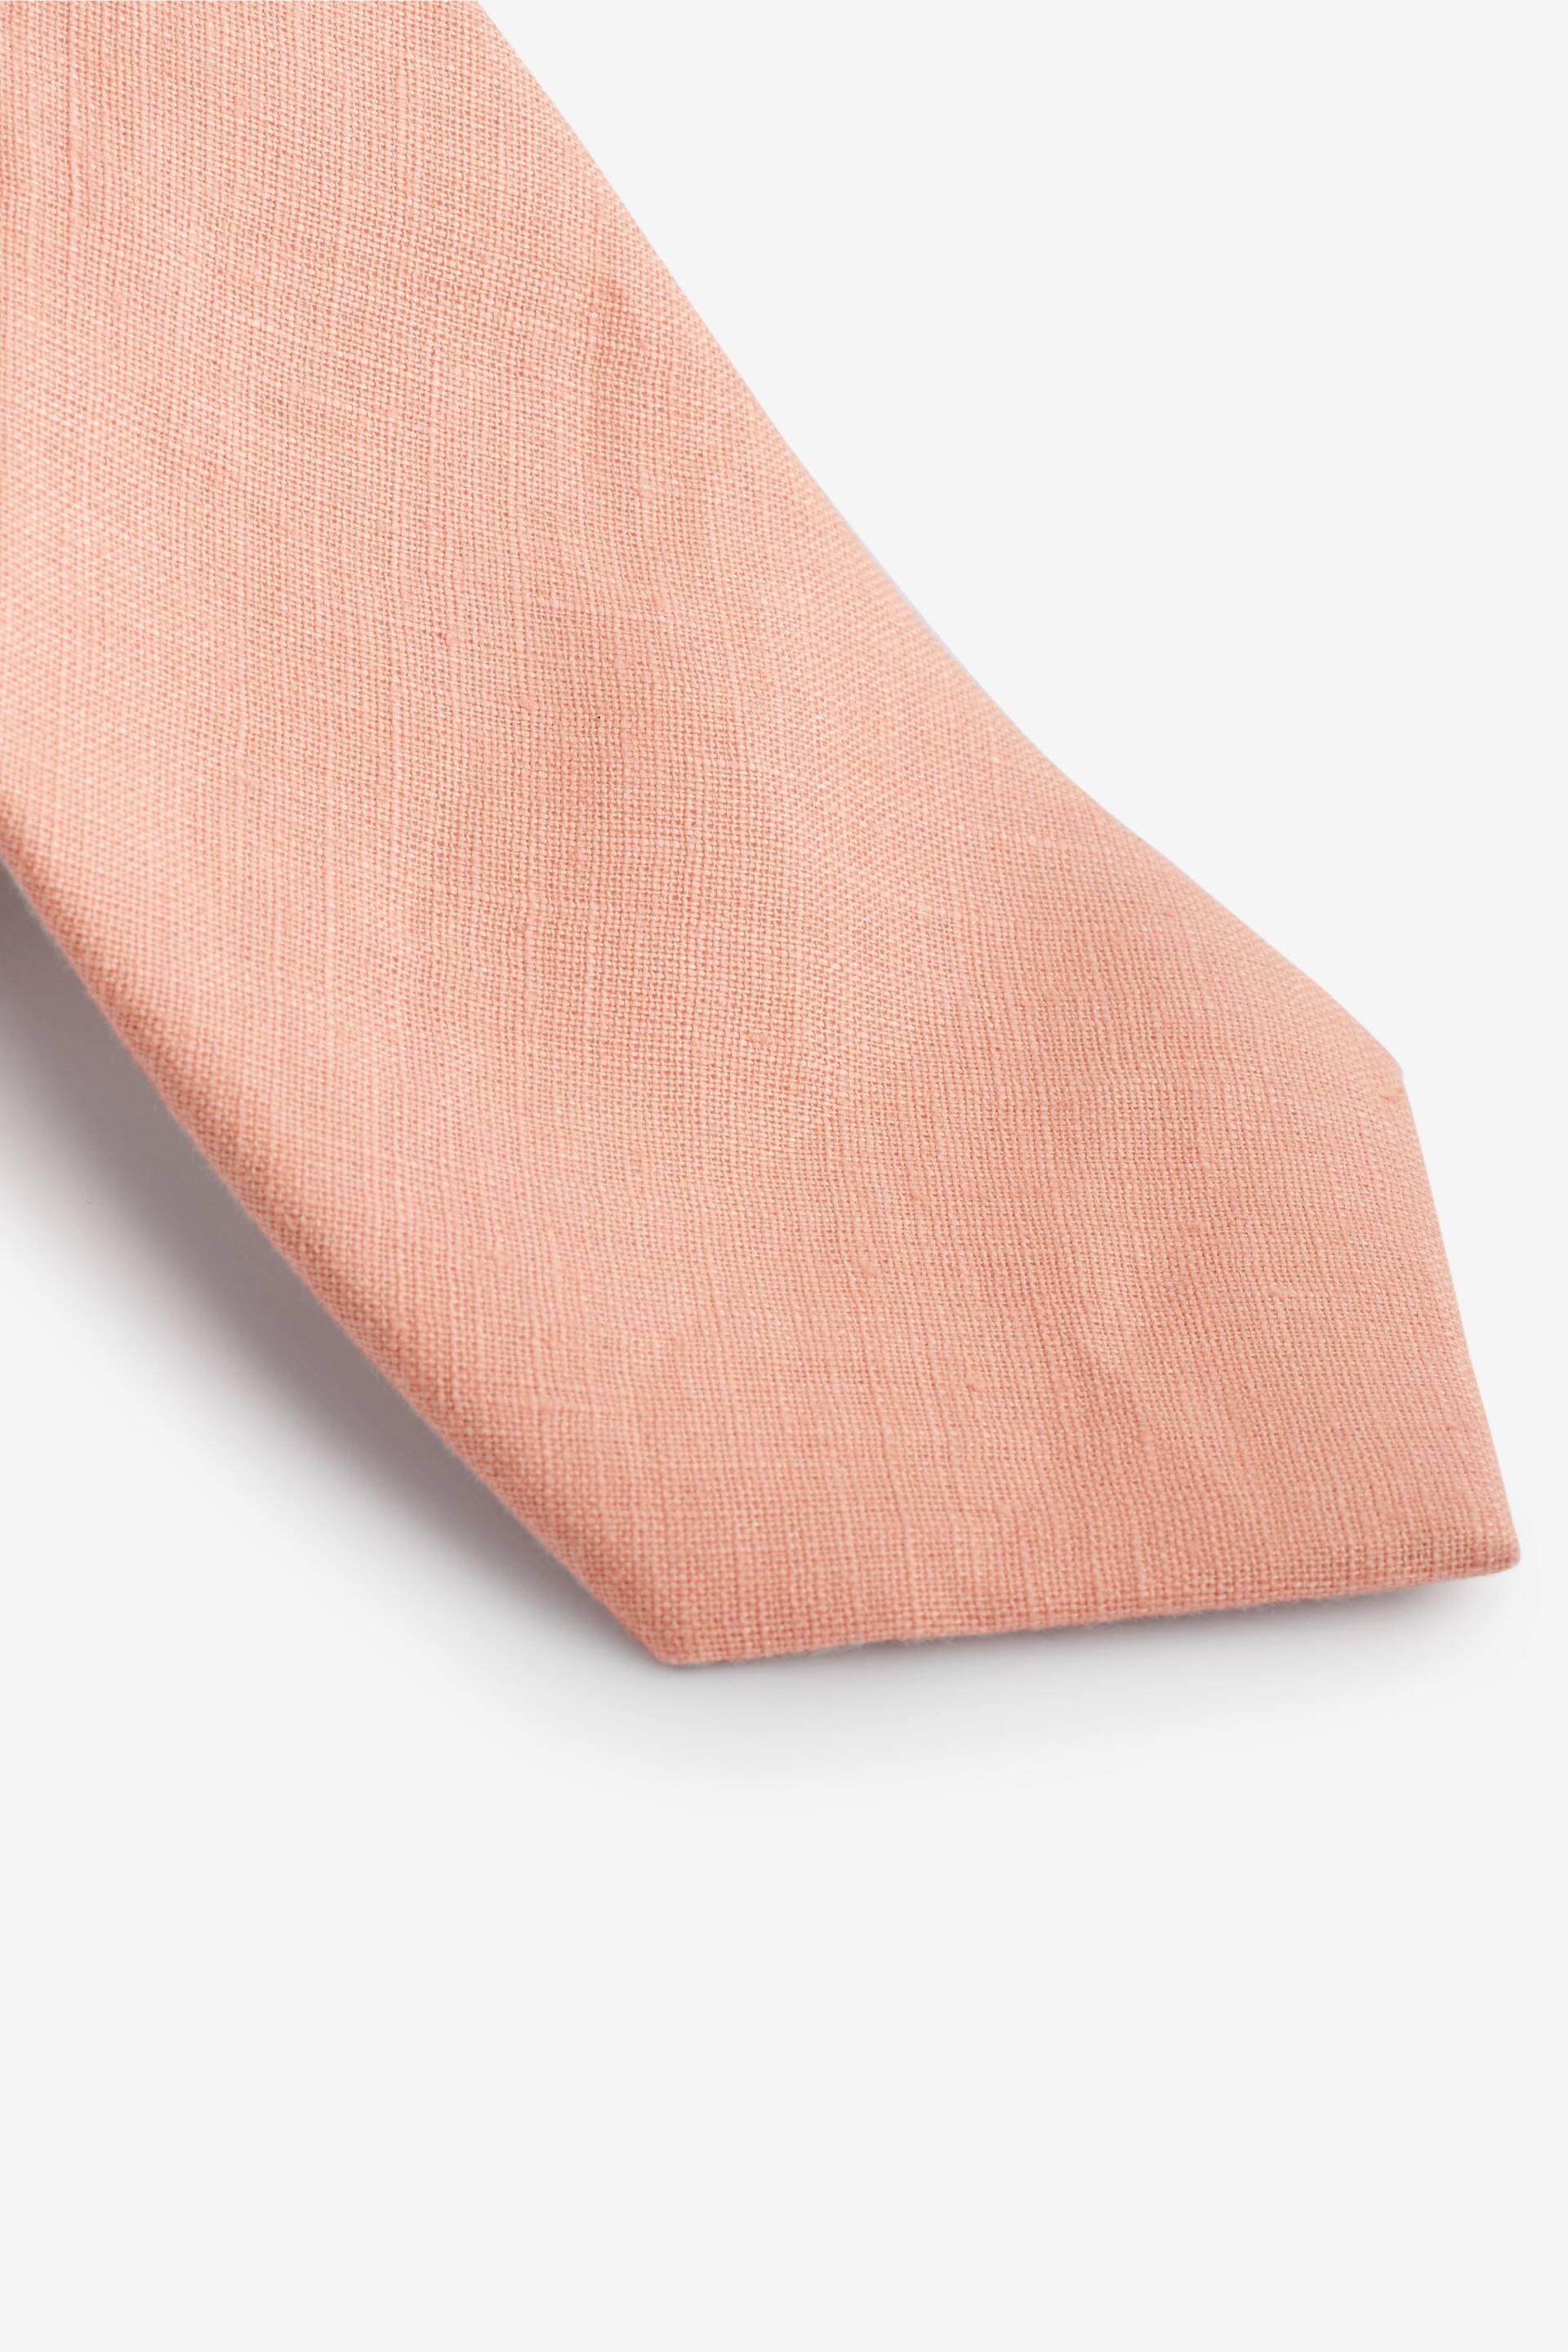 Peach Pink Linen Tie - Image 2 of 3